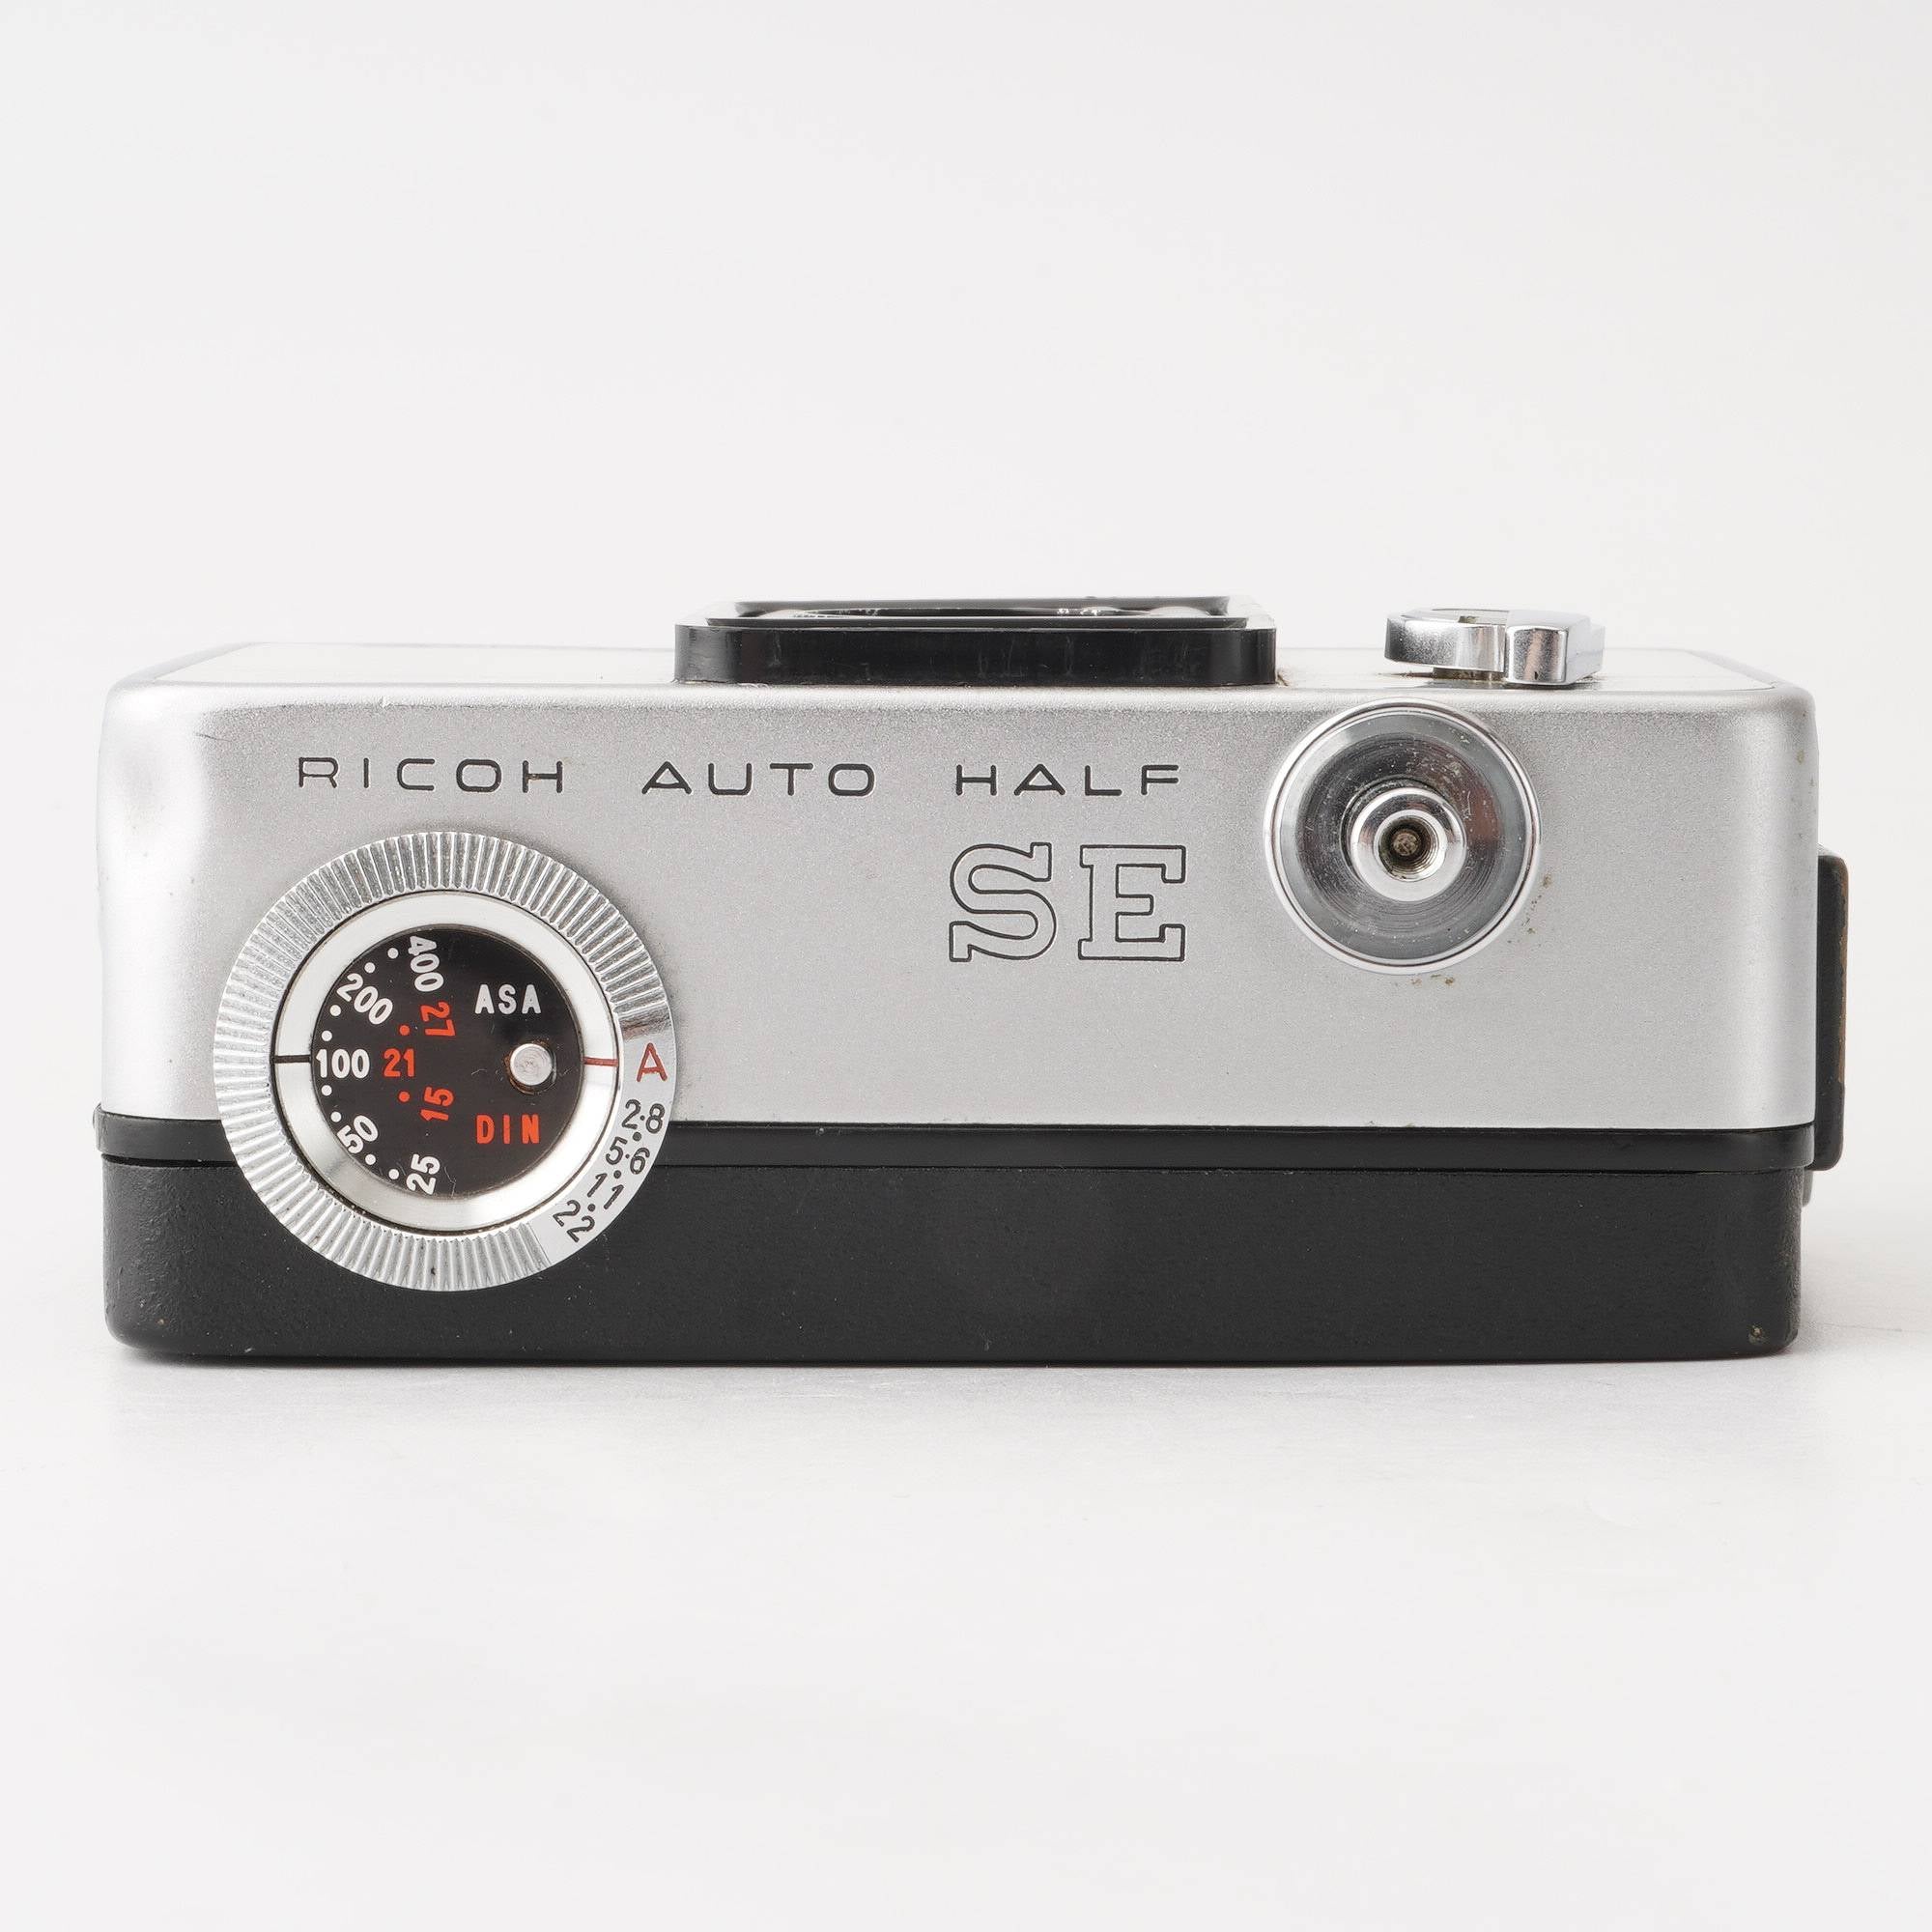 Ricoh AUTO HALF SE / 25mm f/2.8 – Natural Camera / ナチュラルカメラ